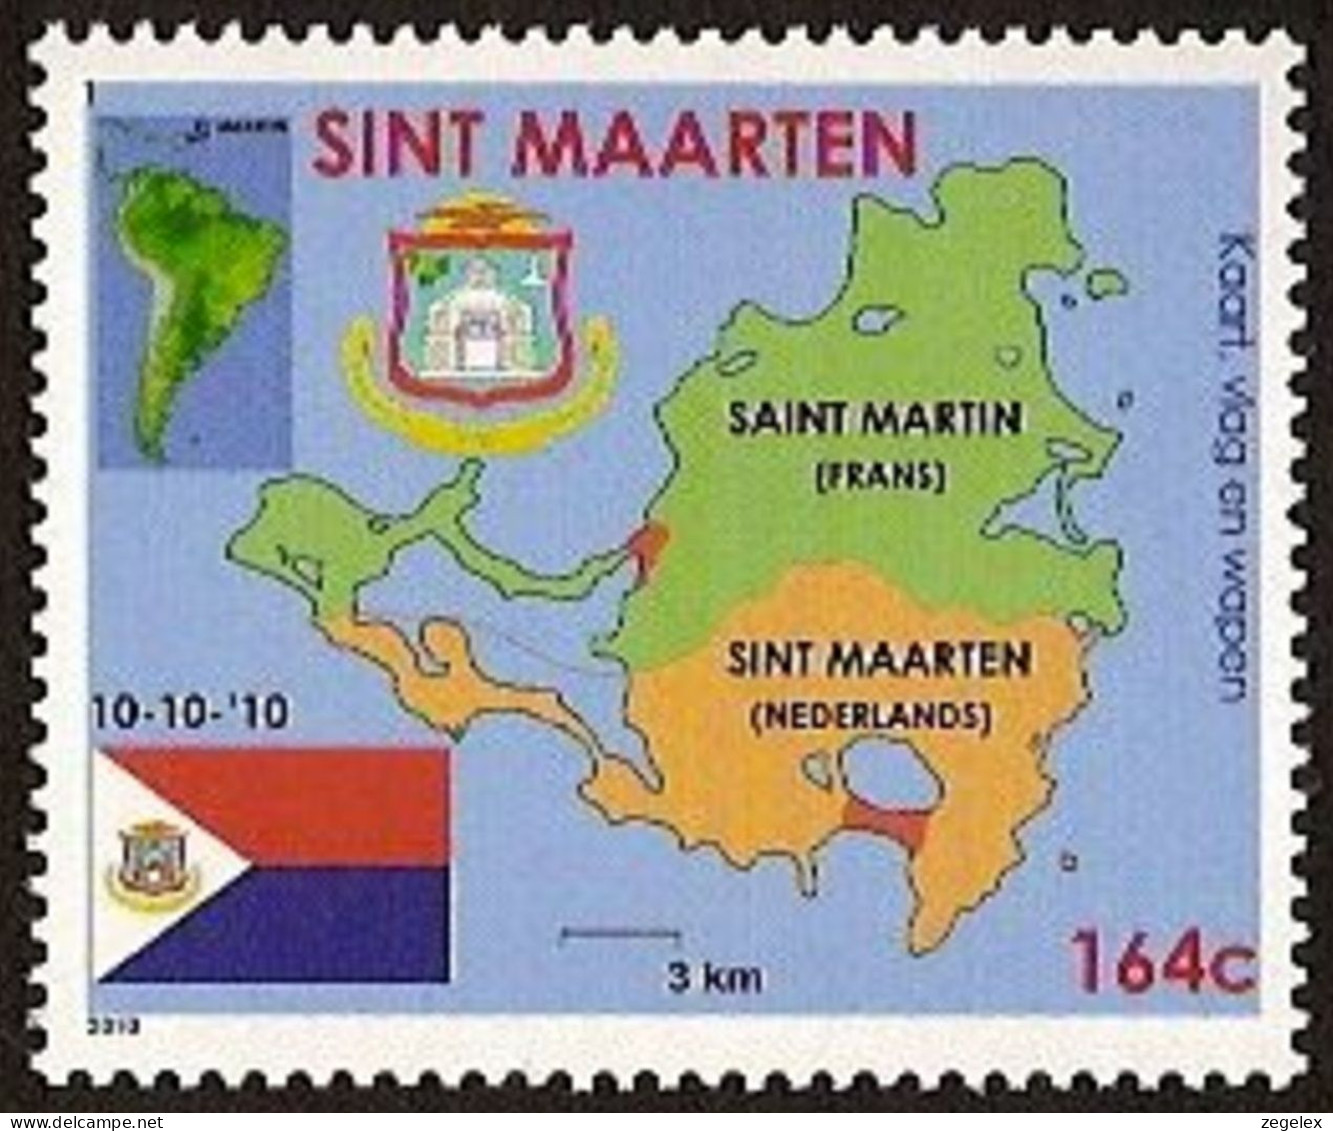 Sint Maarten 2010 Wapen, Vlag, Landkaart NVPH SM-001 MNH ** Postfrisch - Curaçao, Nederlandse Antillen, Aruba